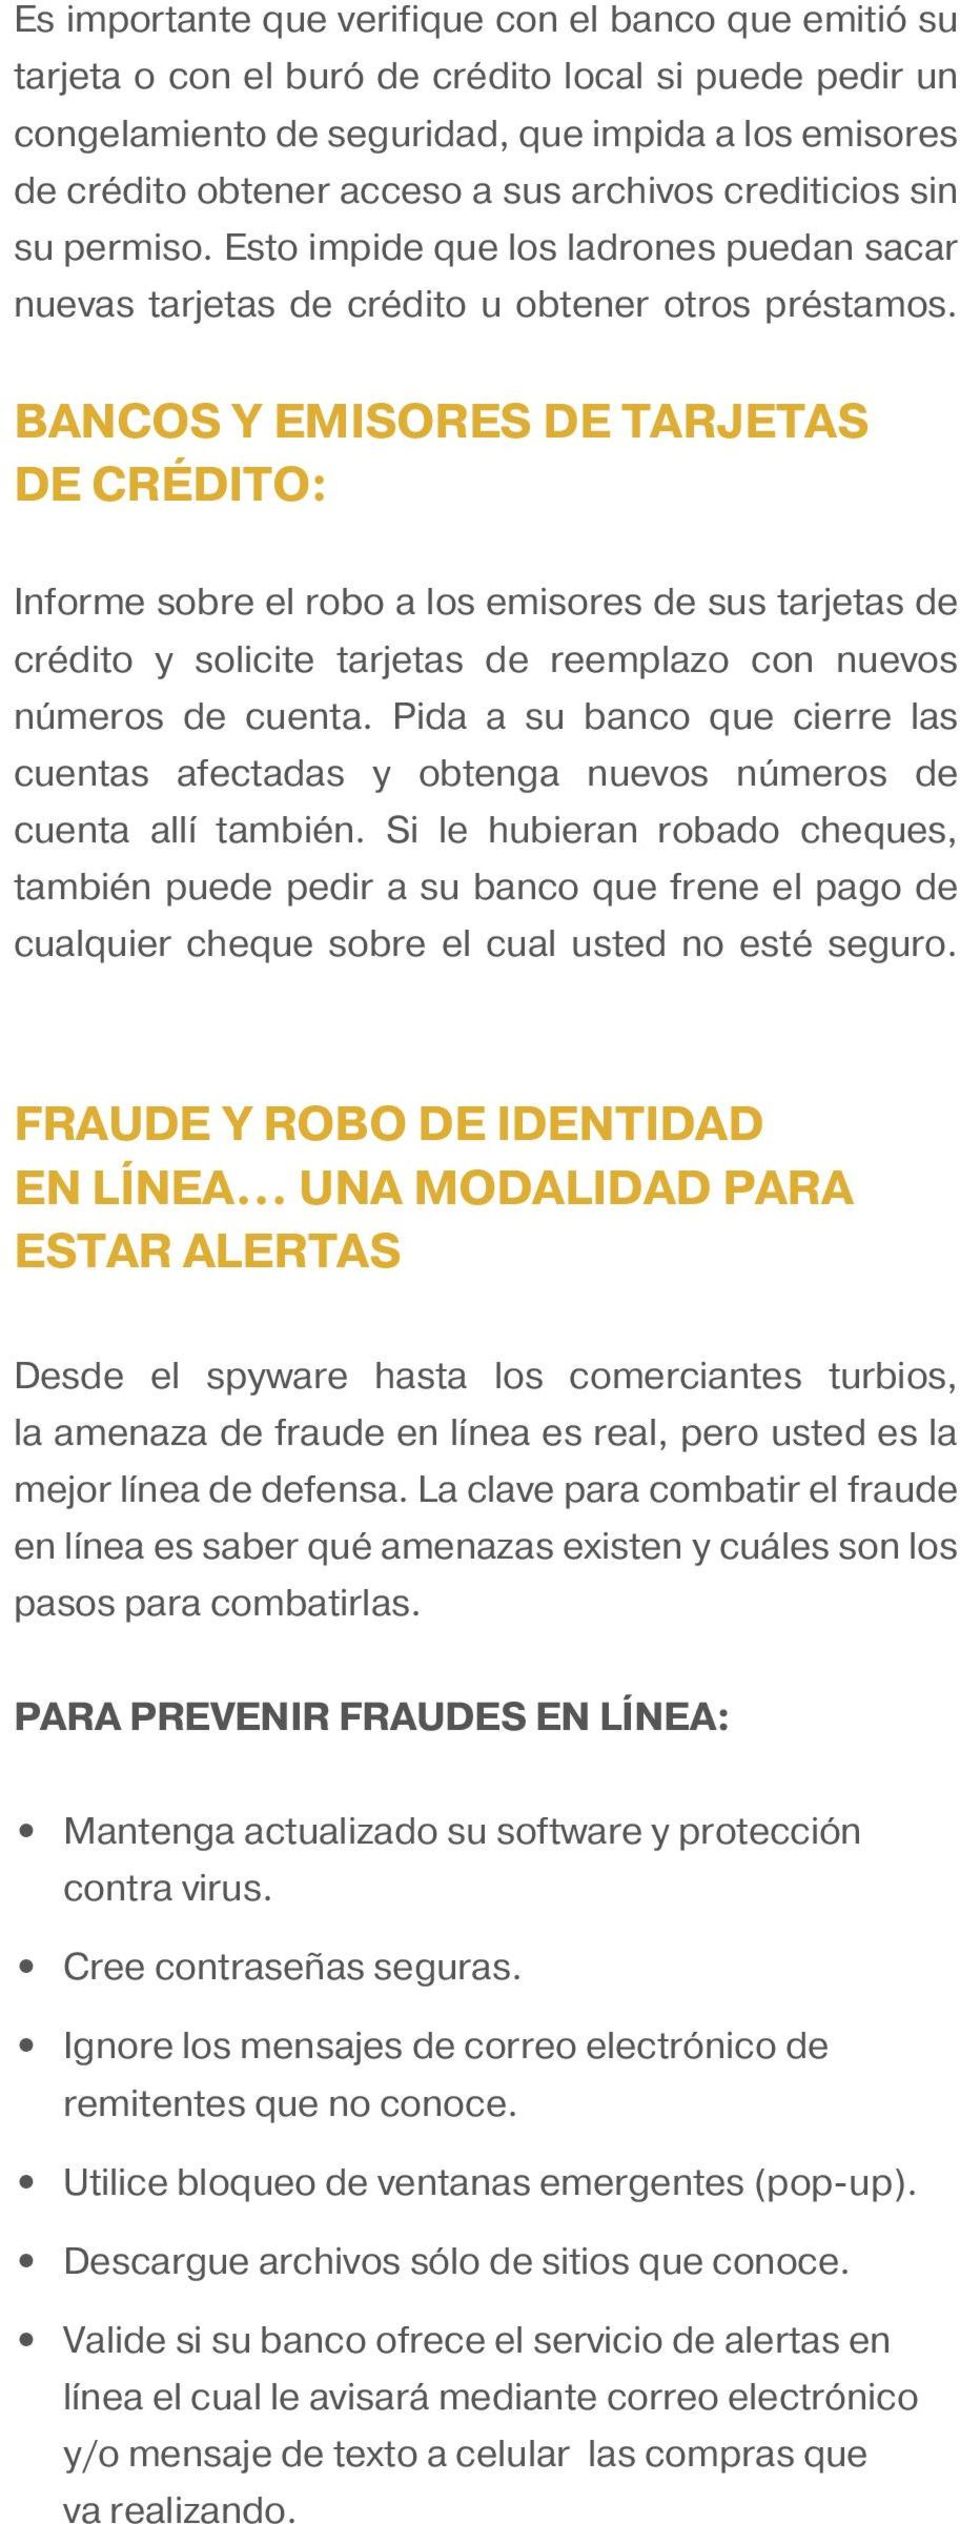 BANCOS Y EMISORES DE TARJETAS DE CRÉDITO: Informe sobre el robo a los emisores de sus tarjetas de crédito y solicite tarjetas de reemplazo con nuevos números de cuenta.